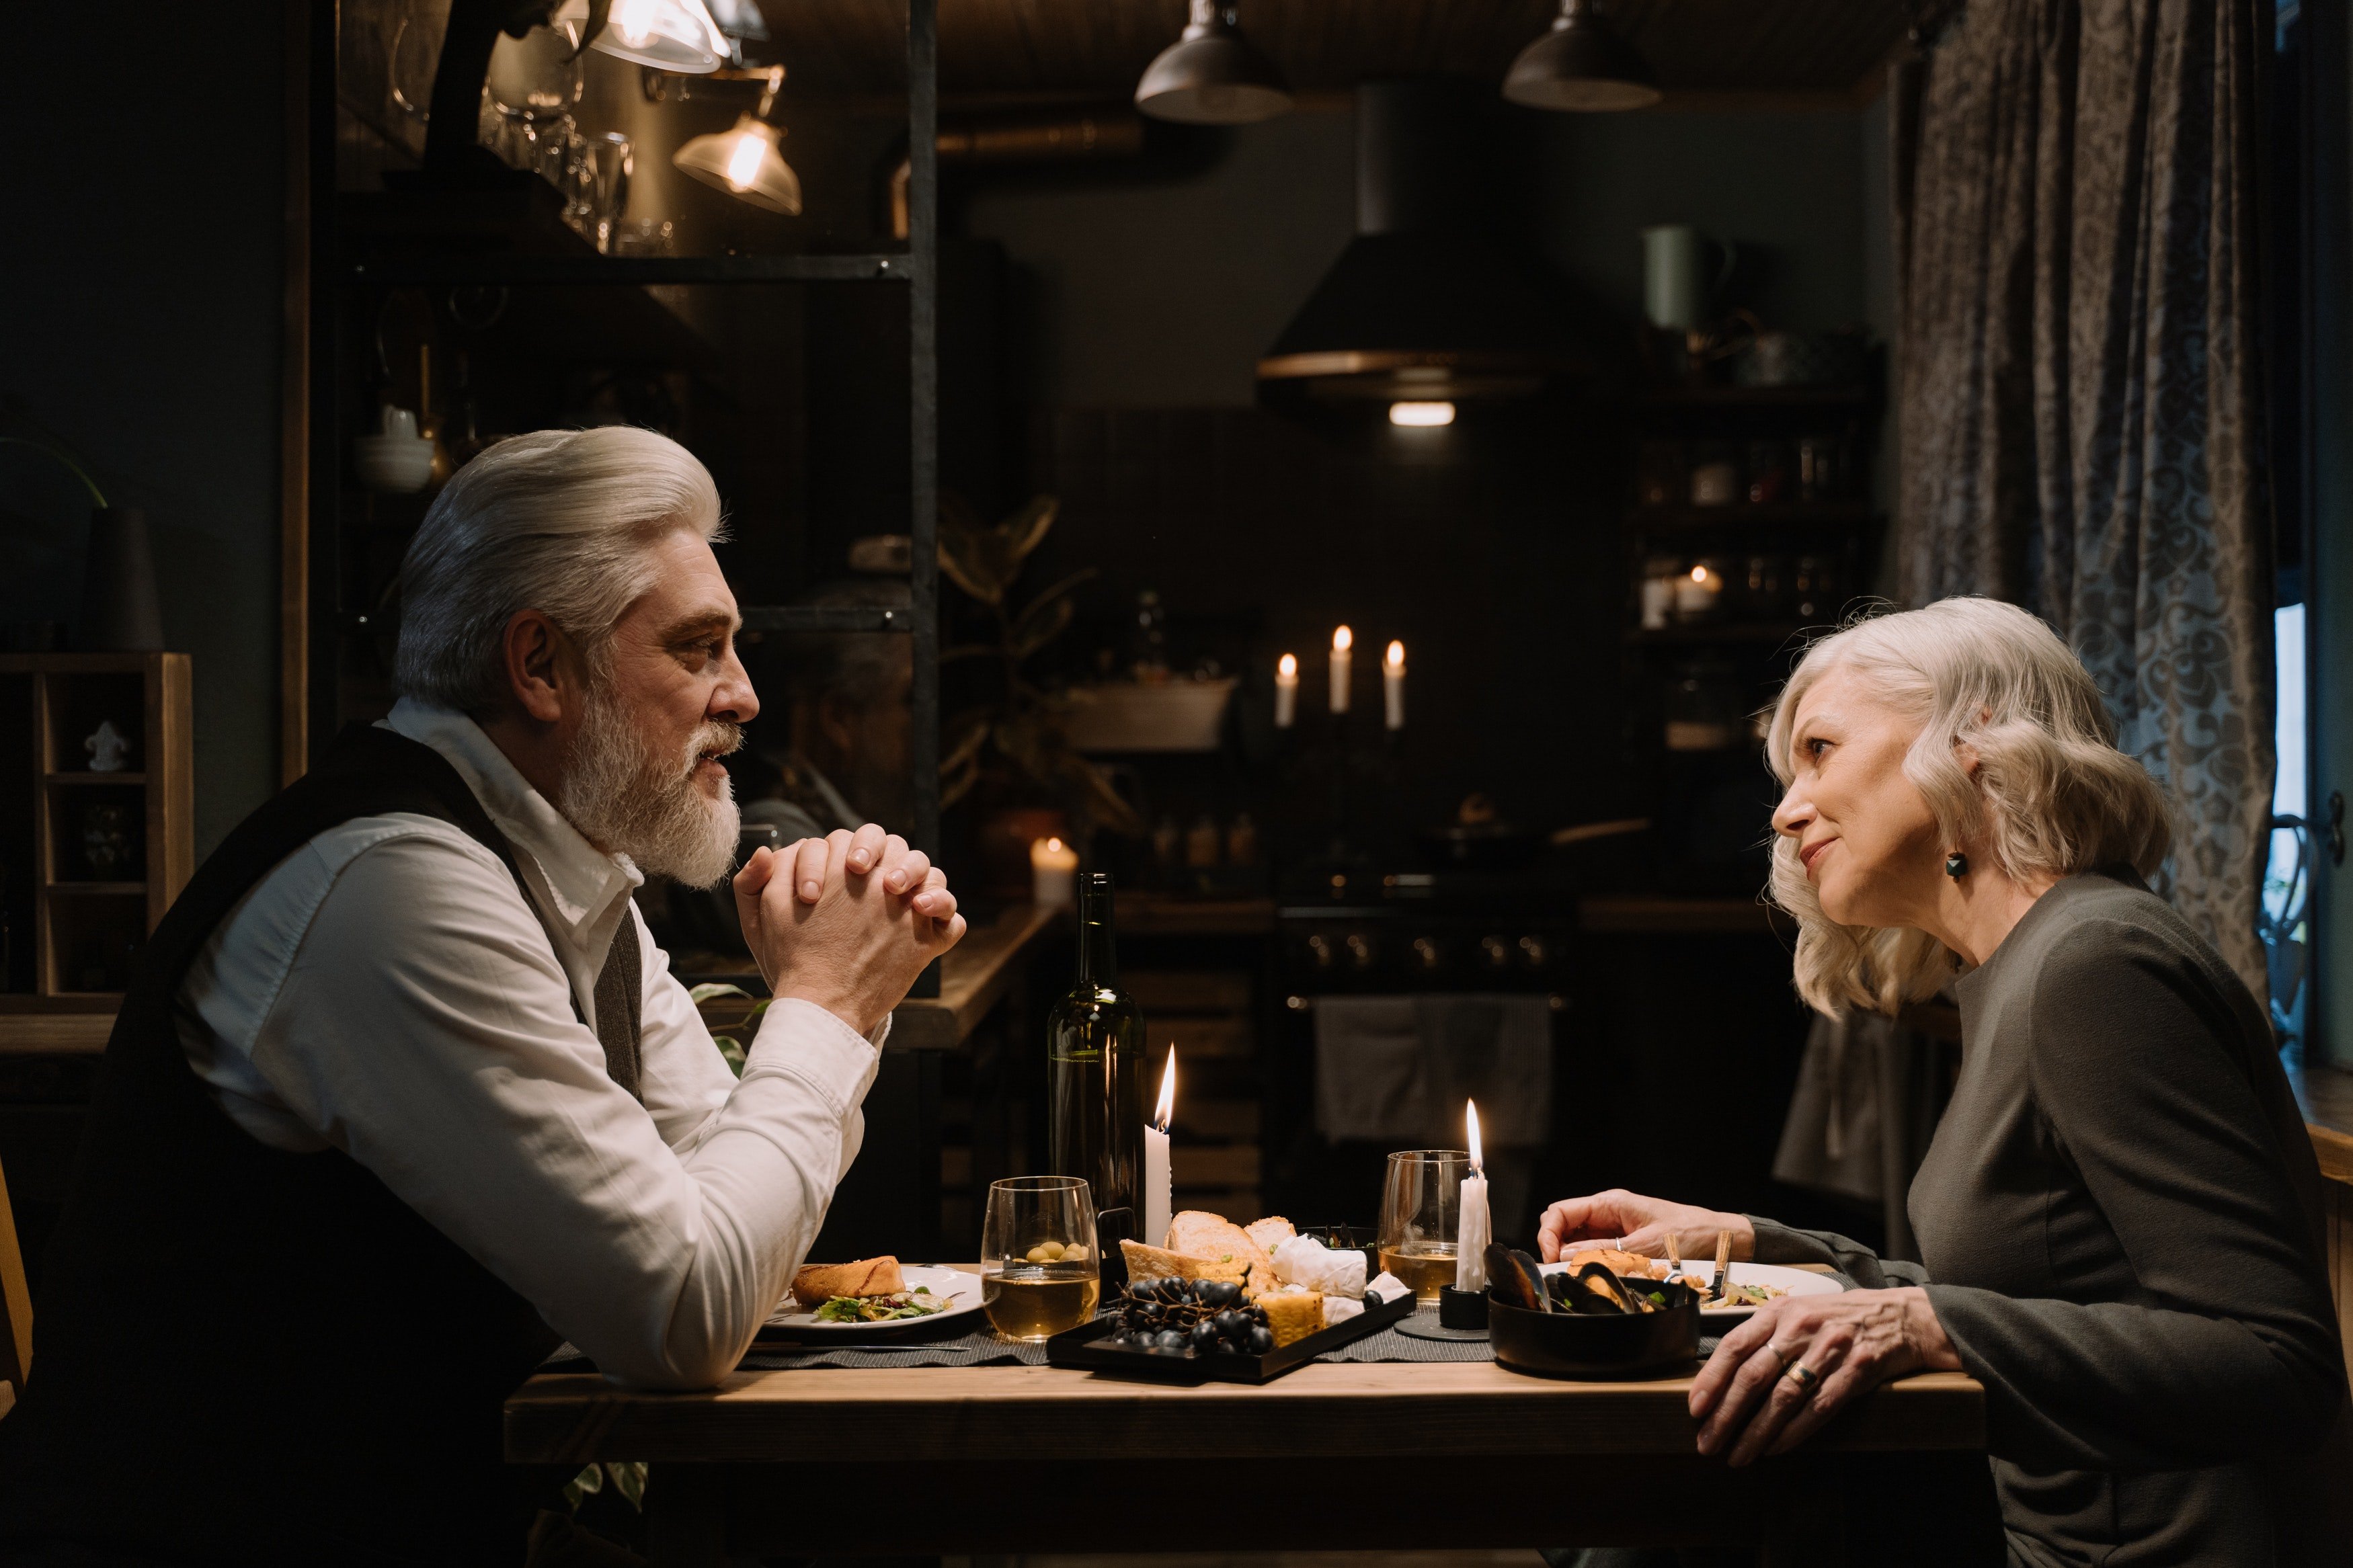 Una pareja conversa mientras comparten una cena. | Foto: Pexels